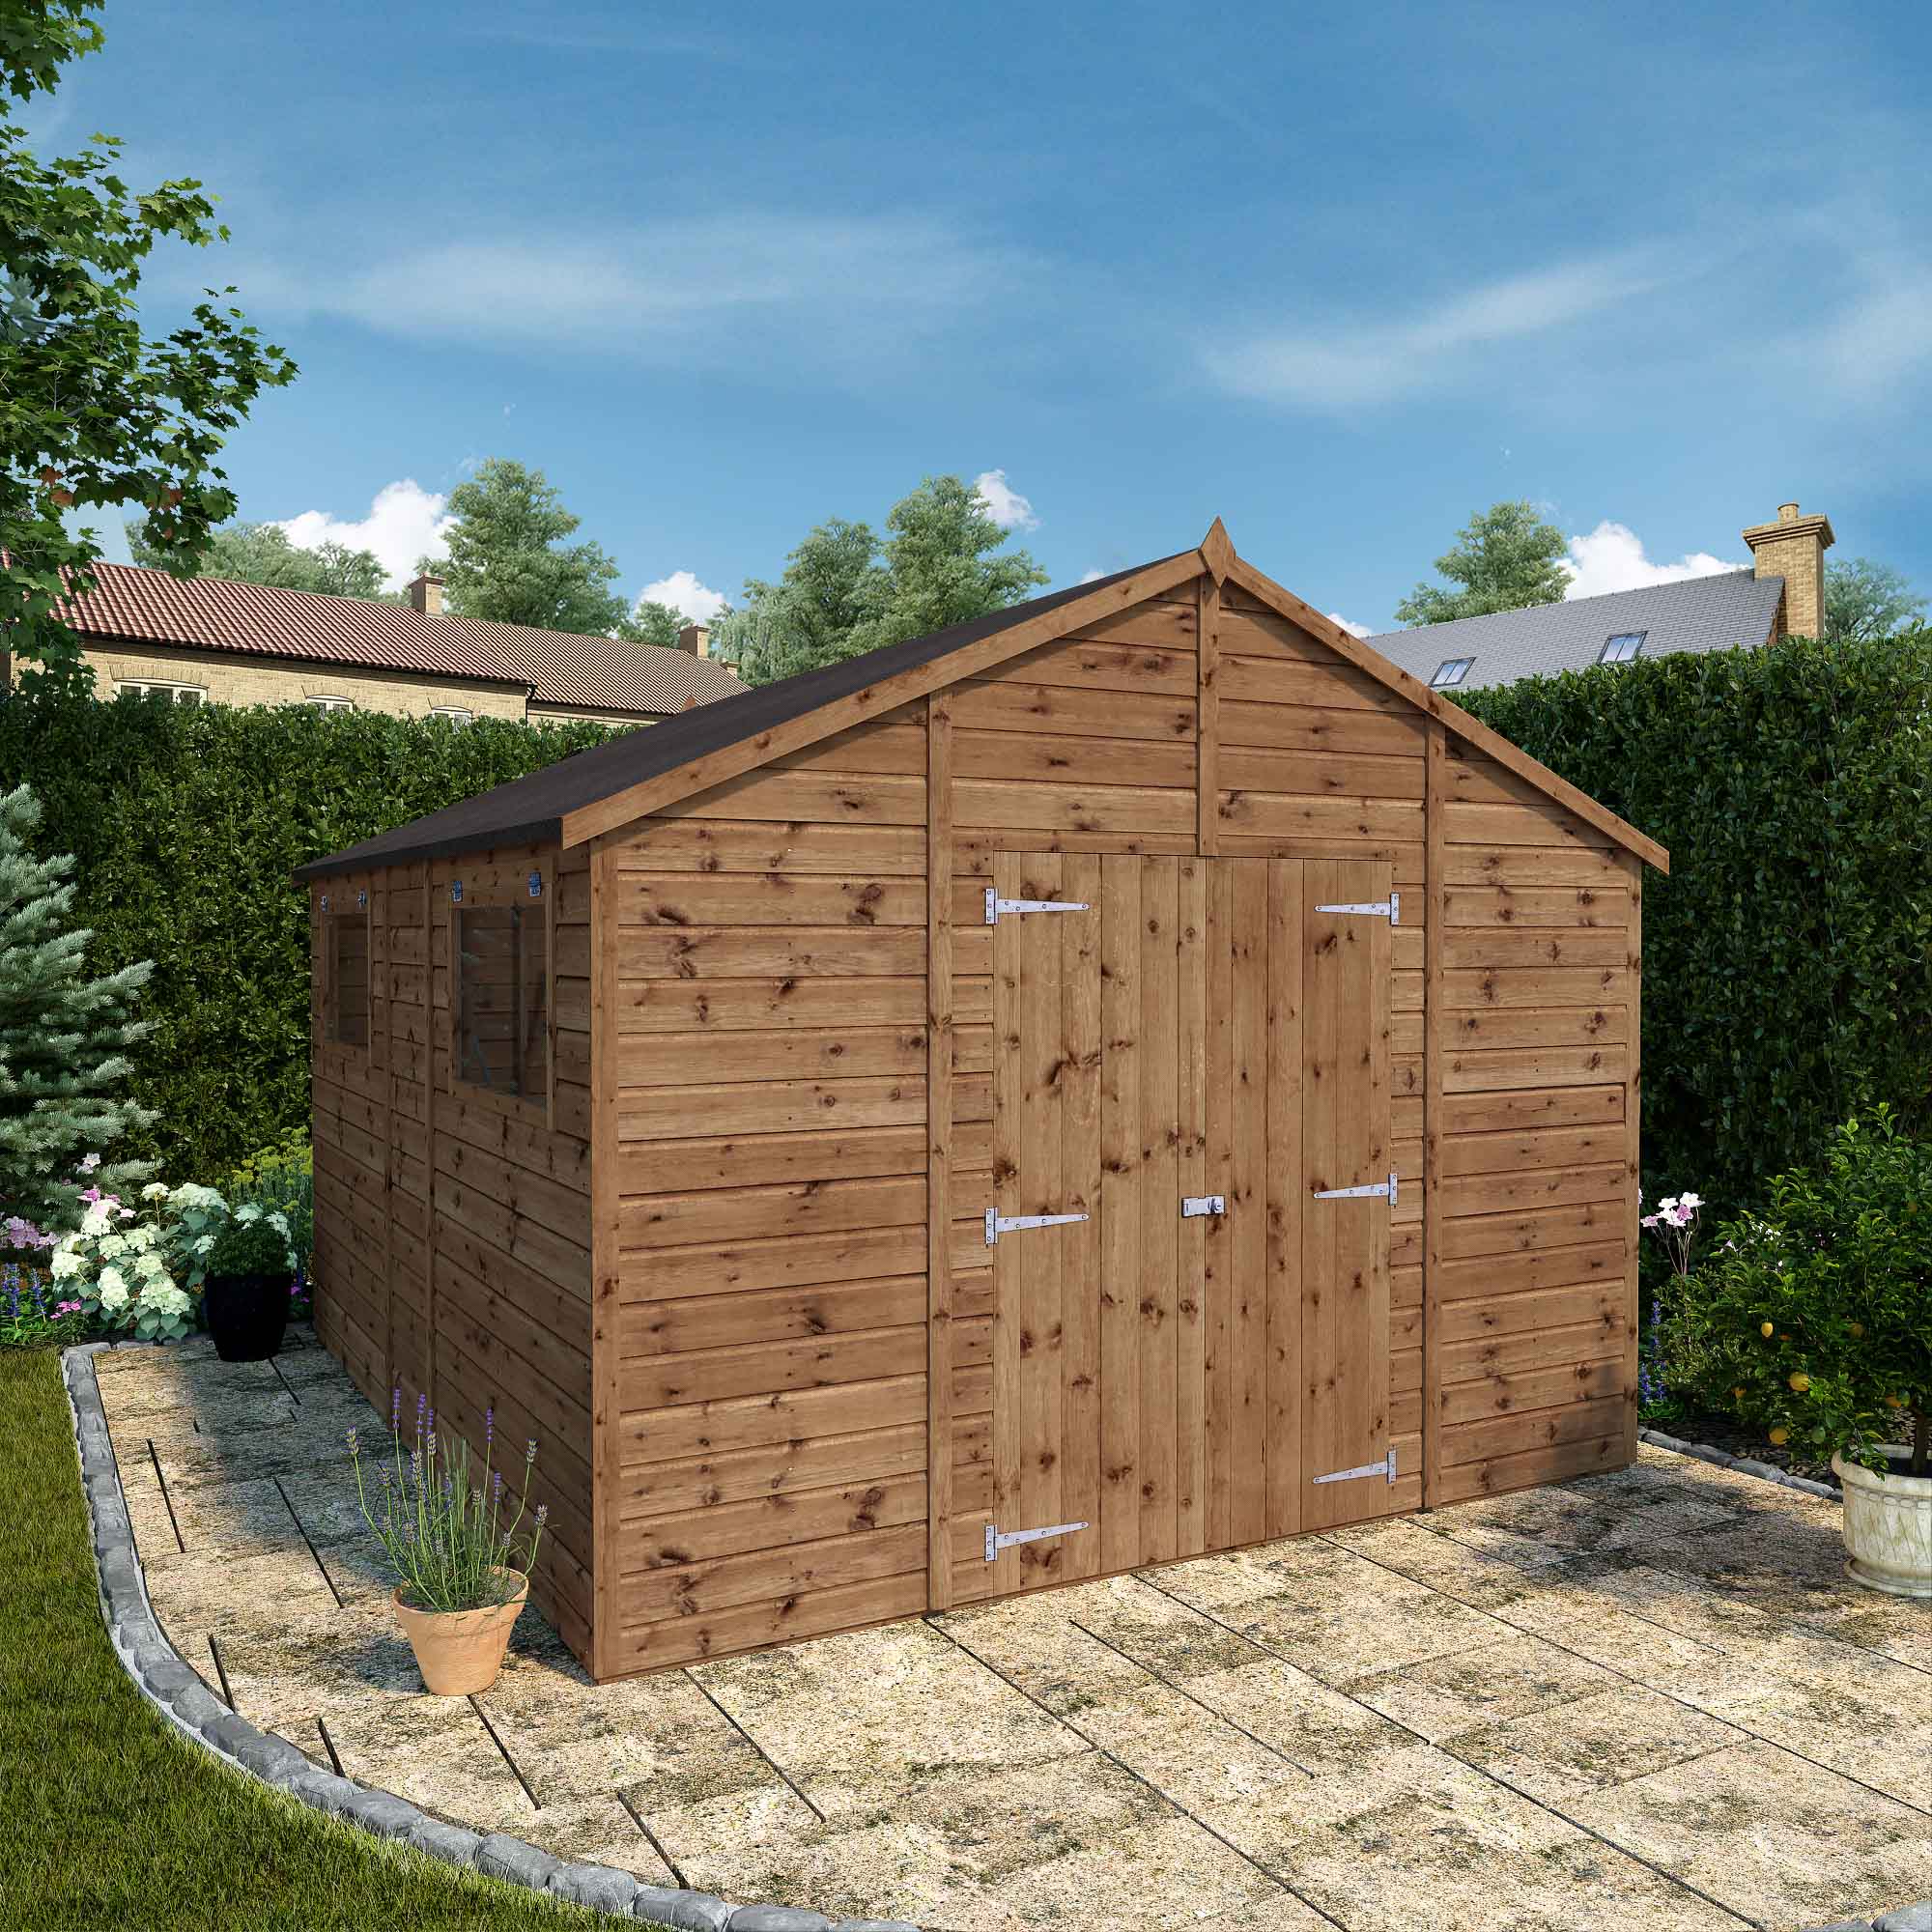 Wooden Workshop Shed 12x10 Modular Outdoor Garden Storage Apex Roof ...